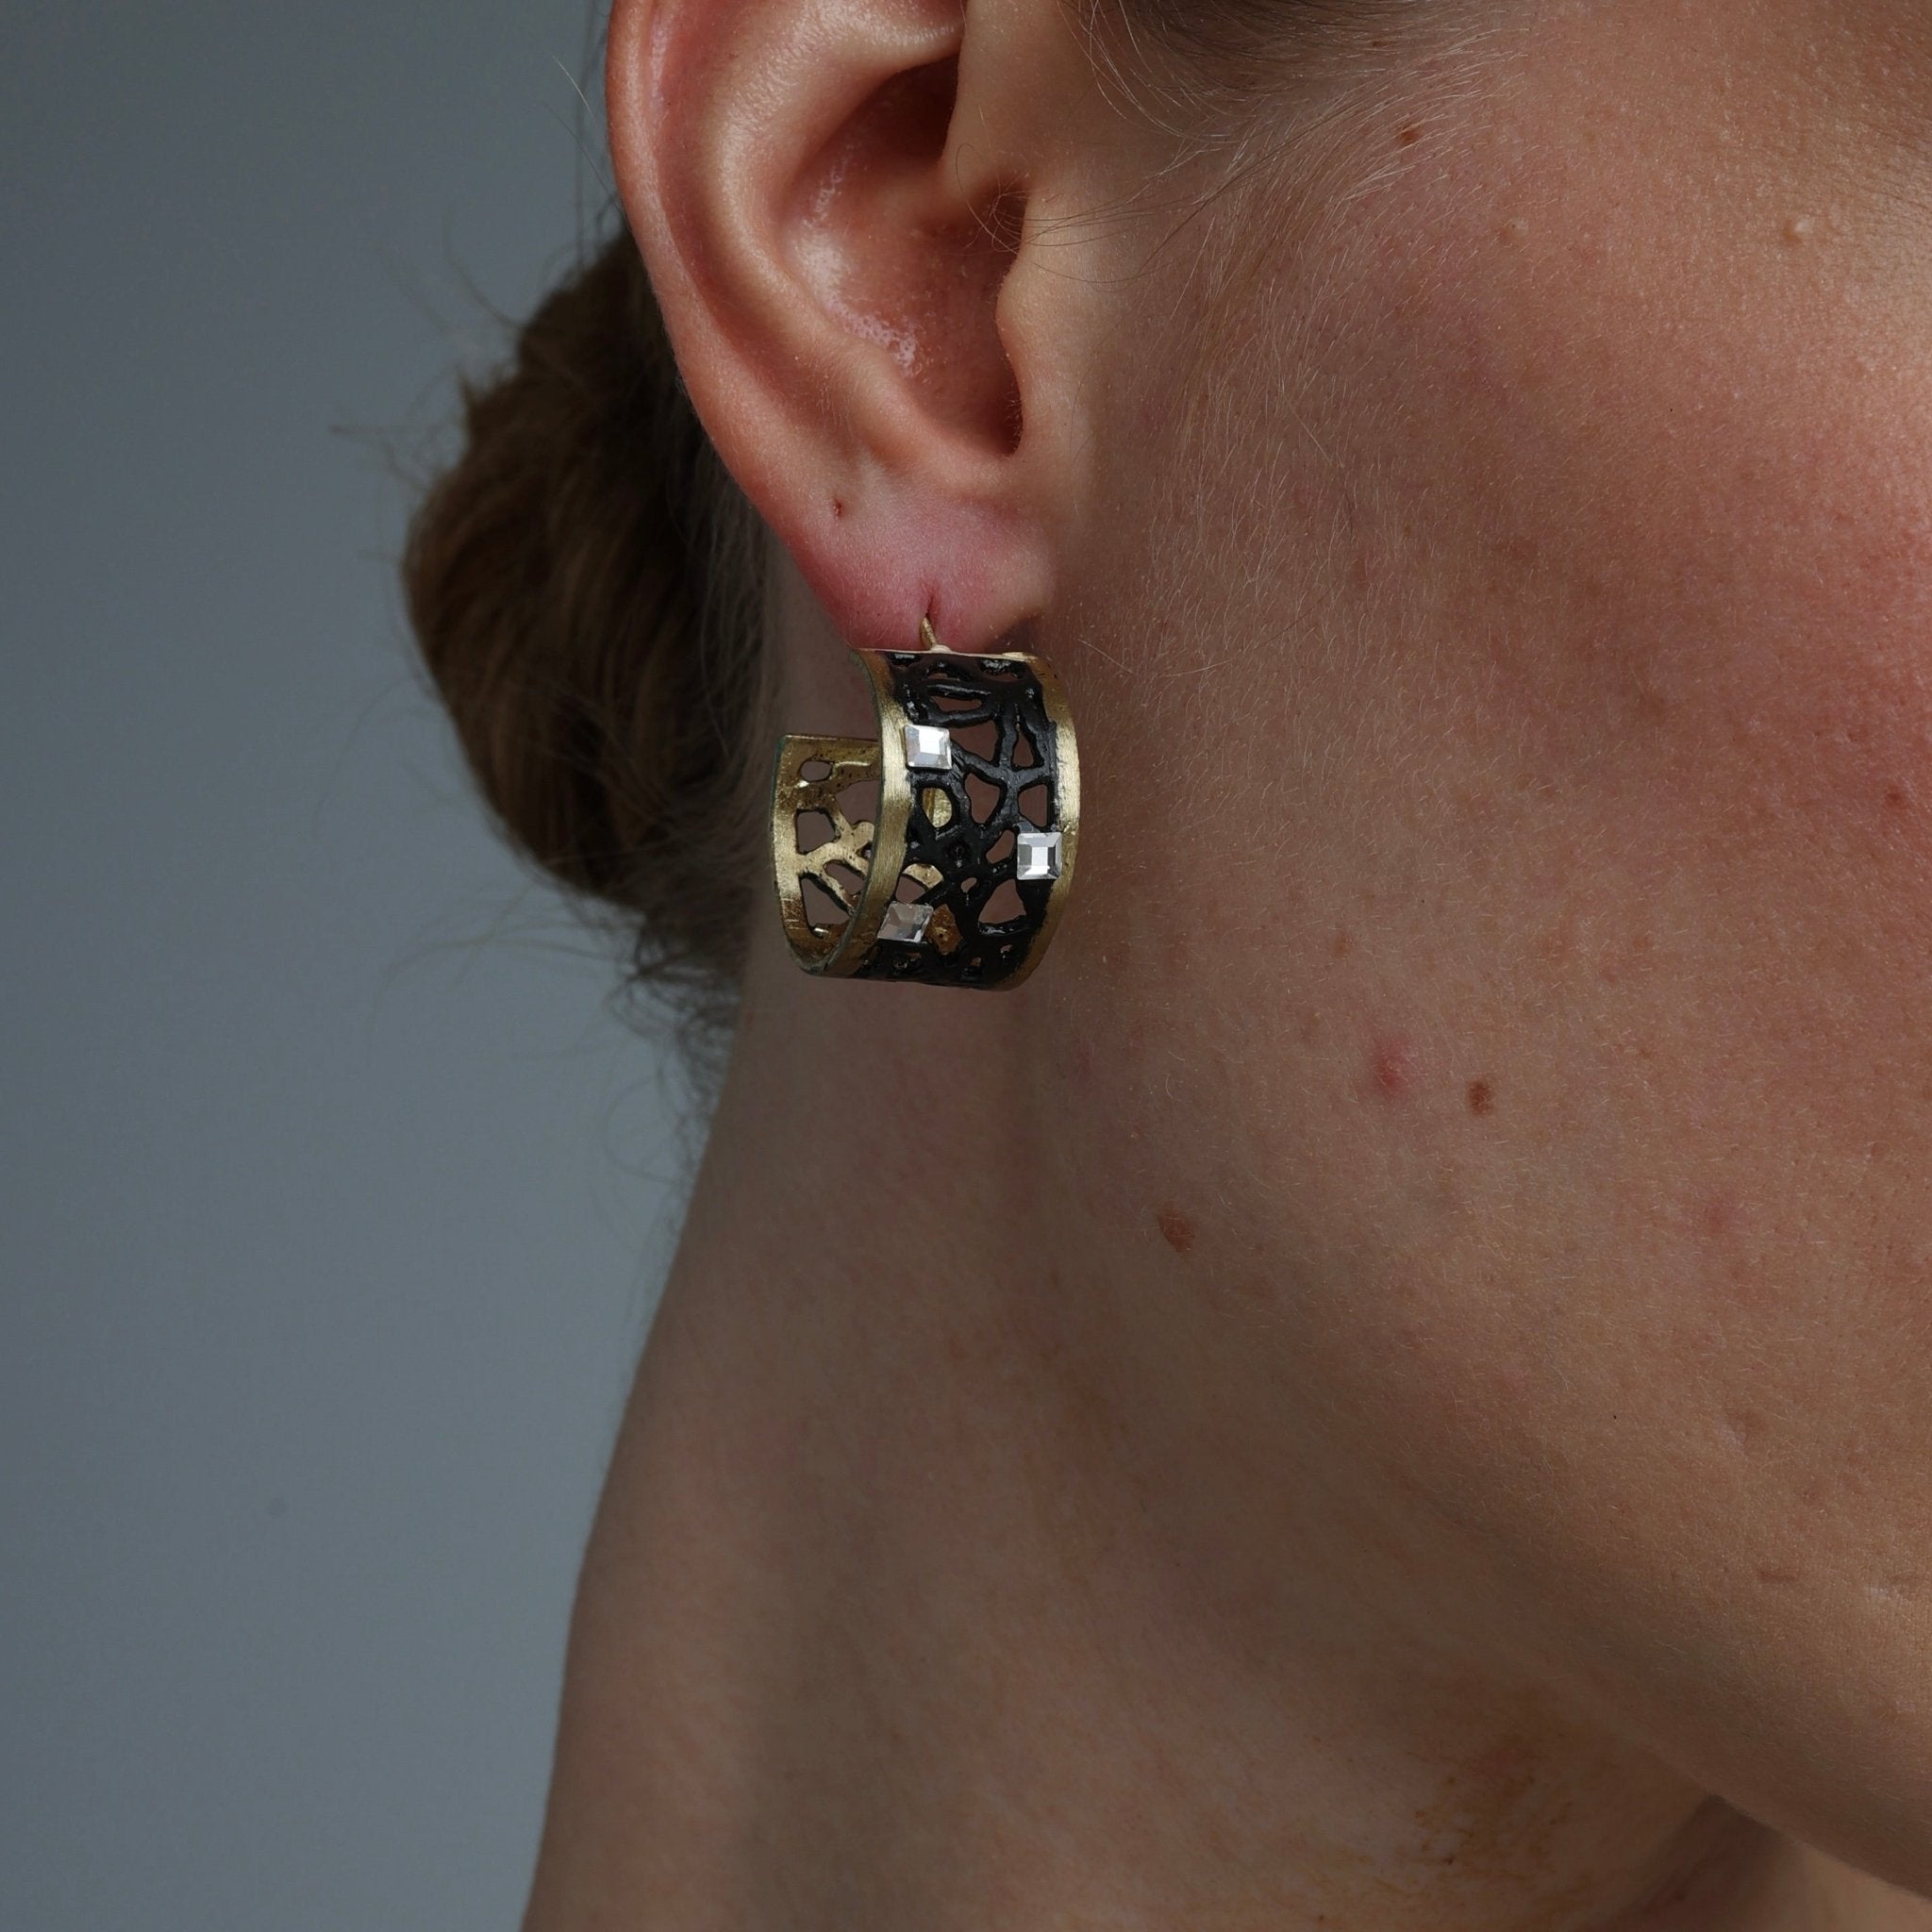 Wisp Earrings - The Nancy Smillie Shop - Art, Jewellery & Designer Gifts Glasgow